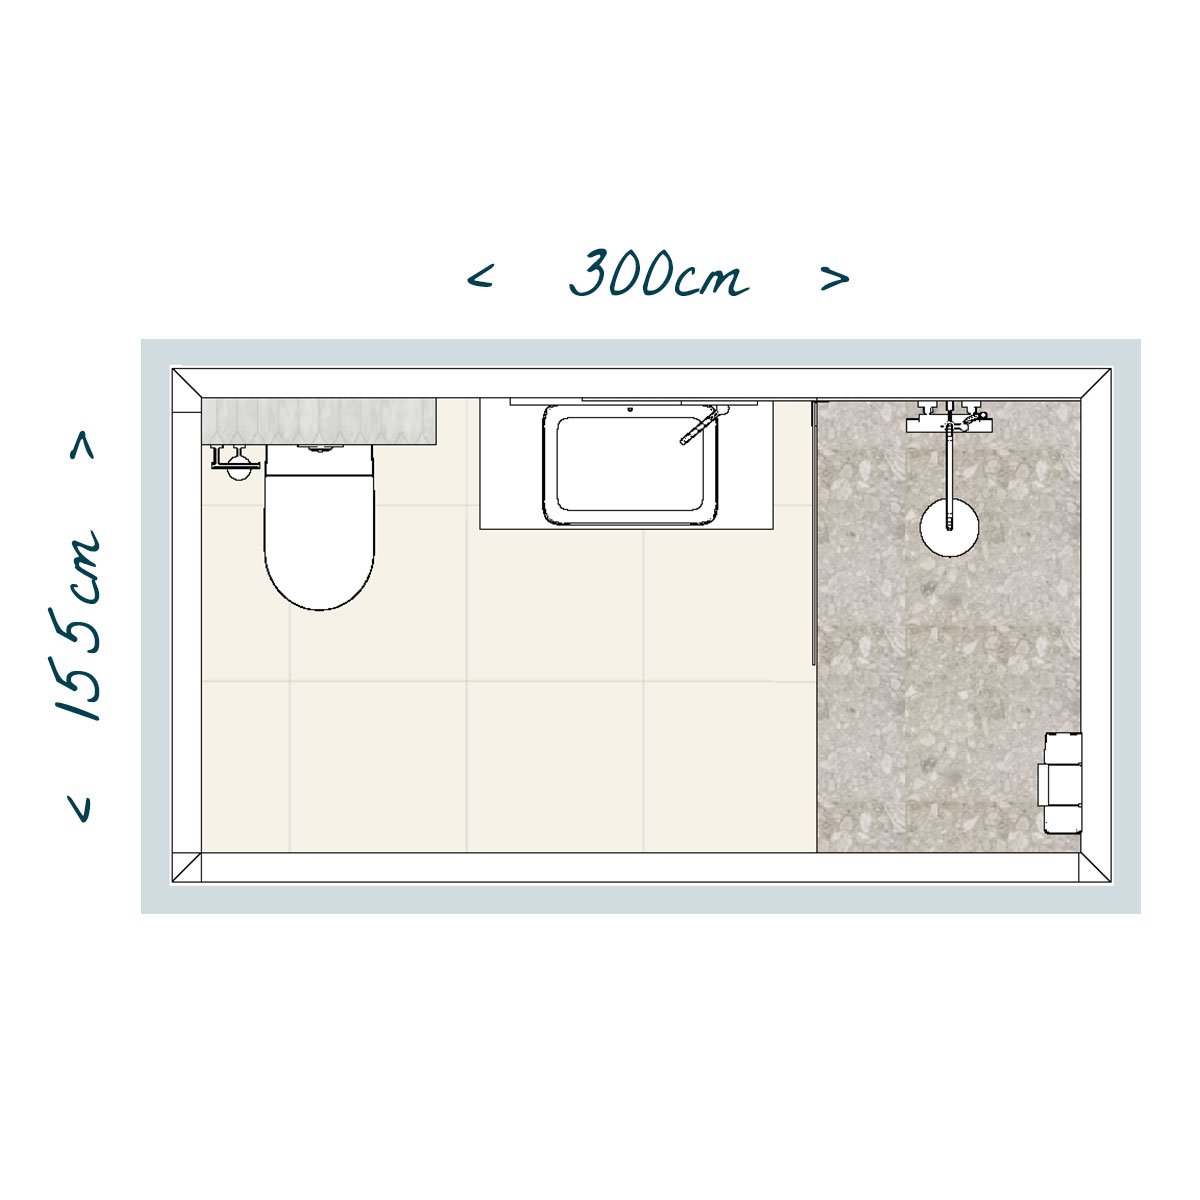 Plan de la salle de bain Rhea